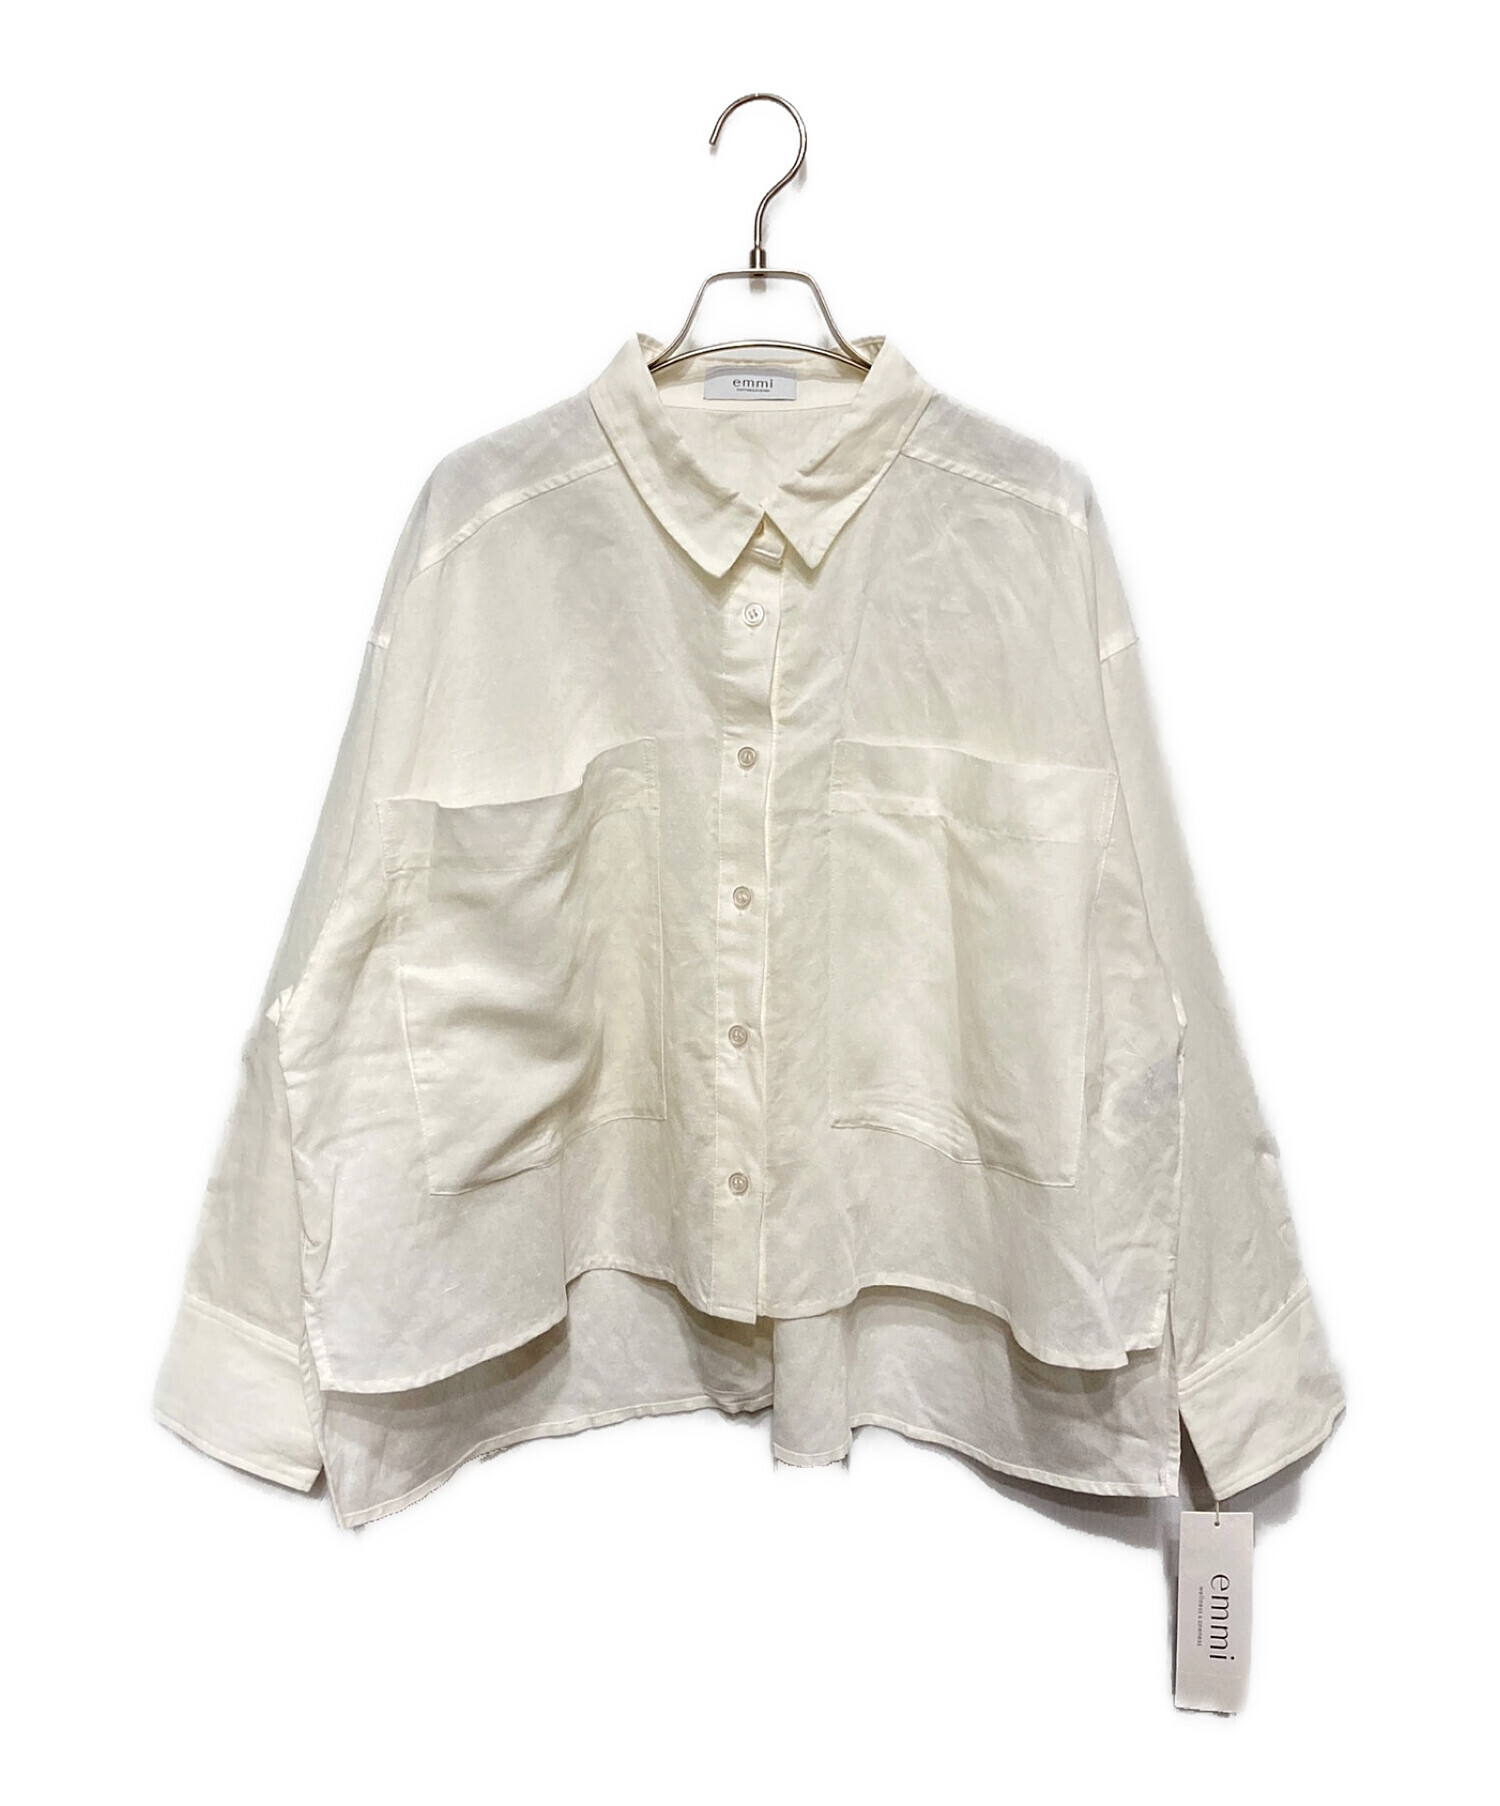 [エミ] 新品リネン混ビッグポケットシャツ 13WFB232011 レディース